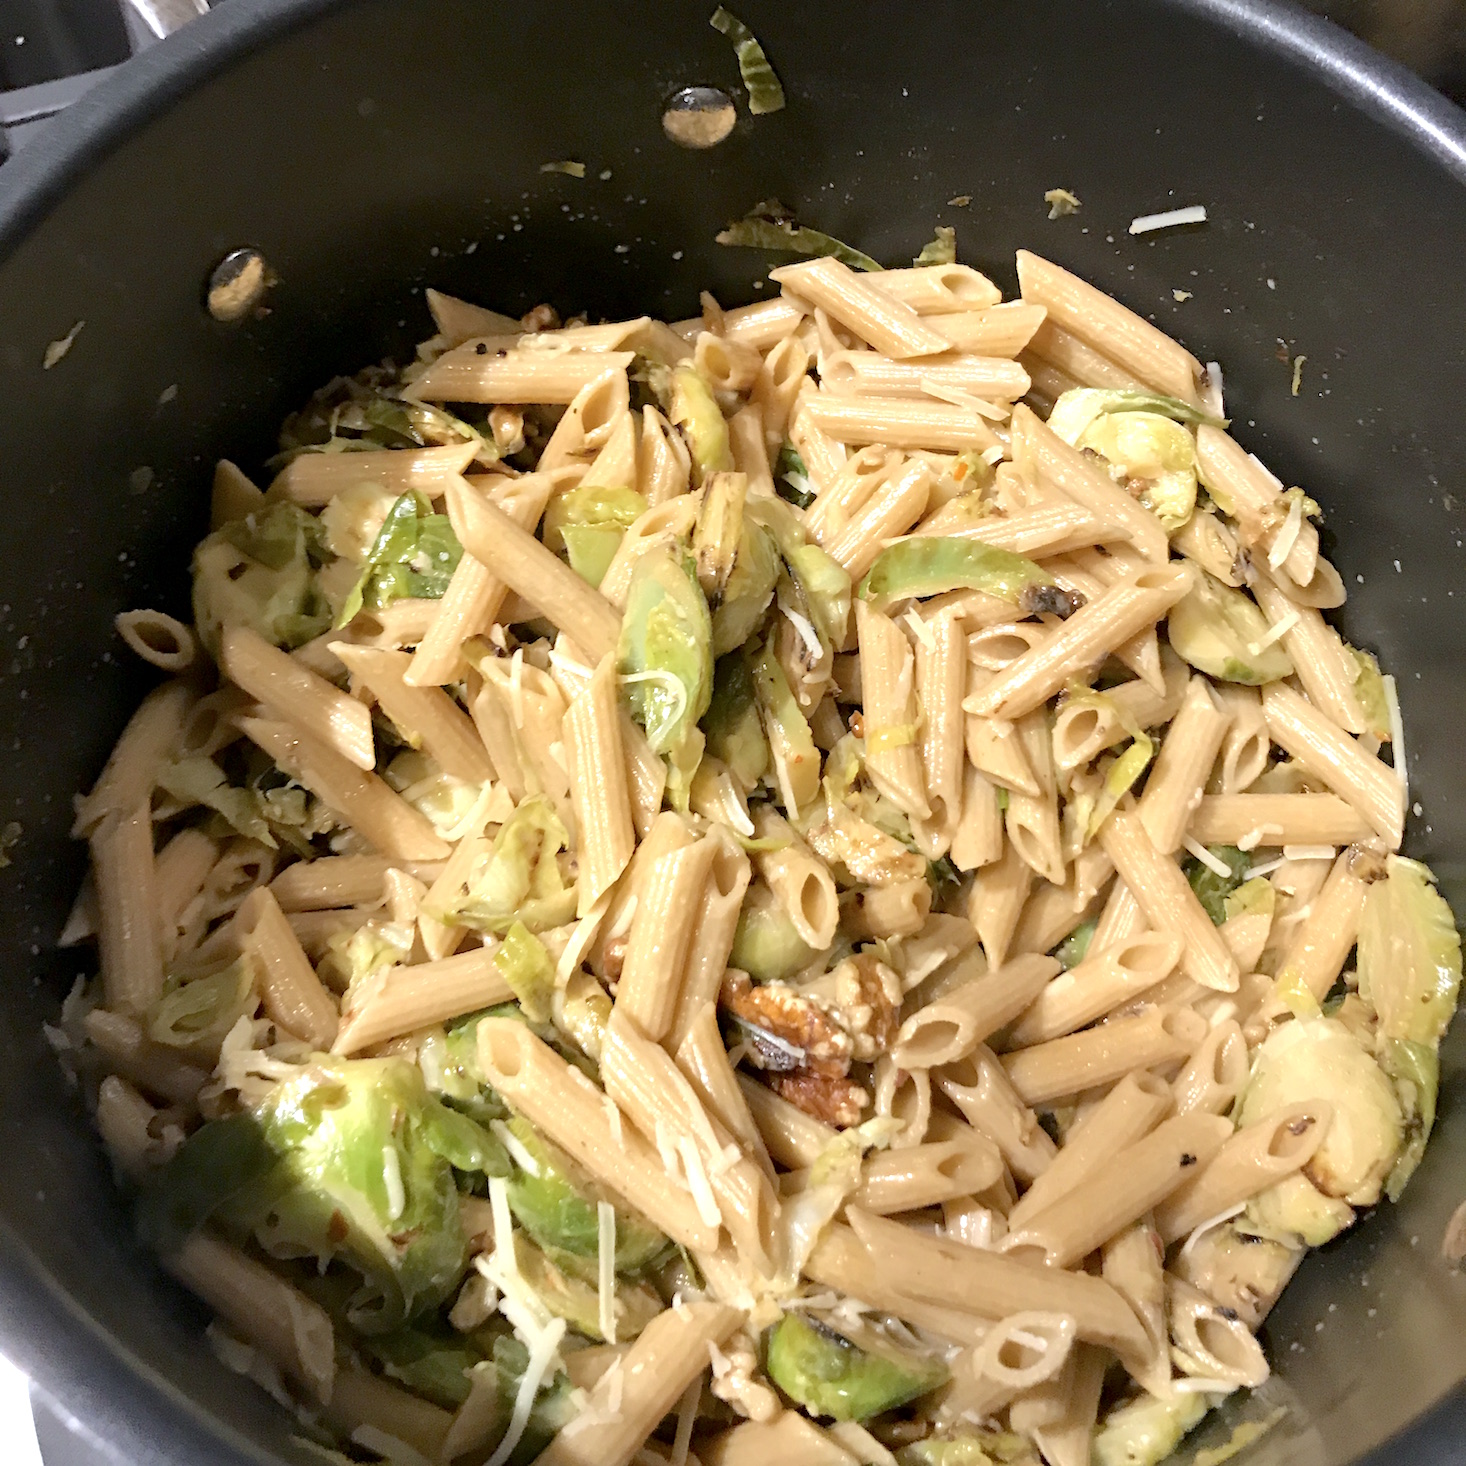 Terra's Kitchen March 2018 - pasta